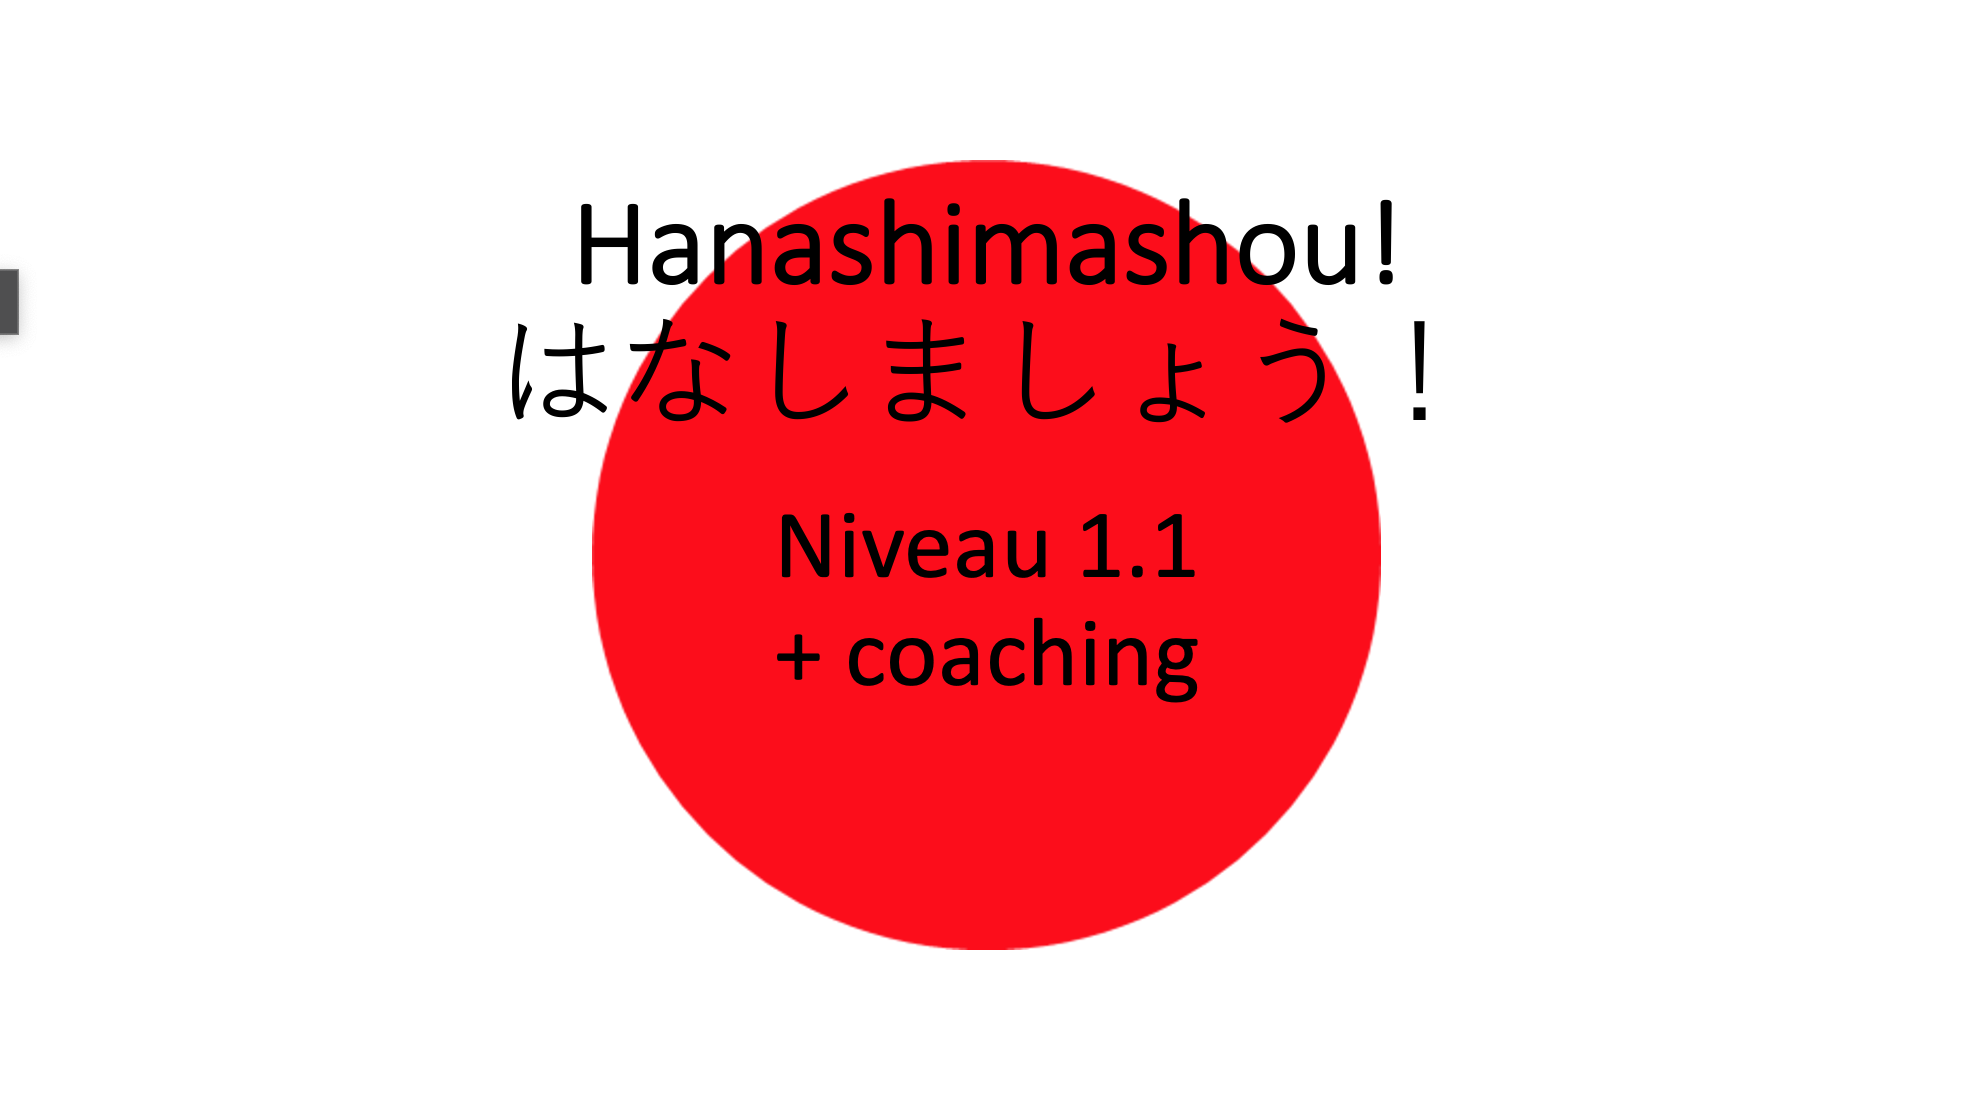 Hanashimashou 1.1 + coaching